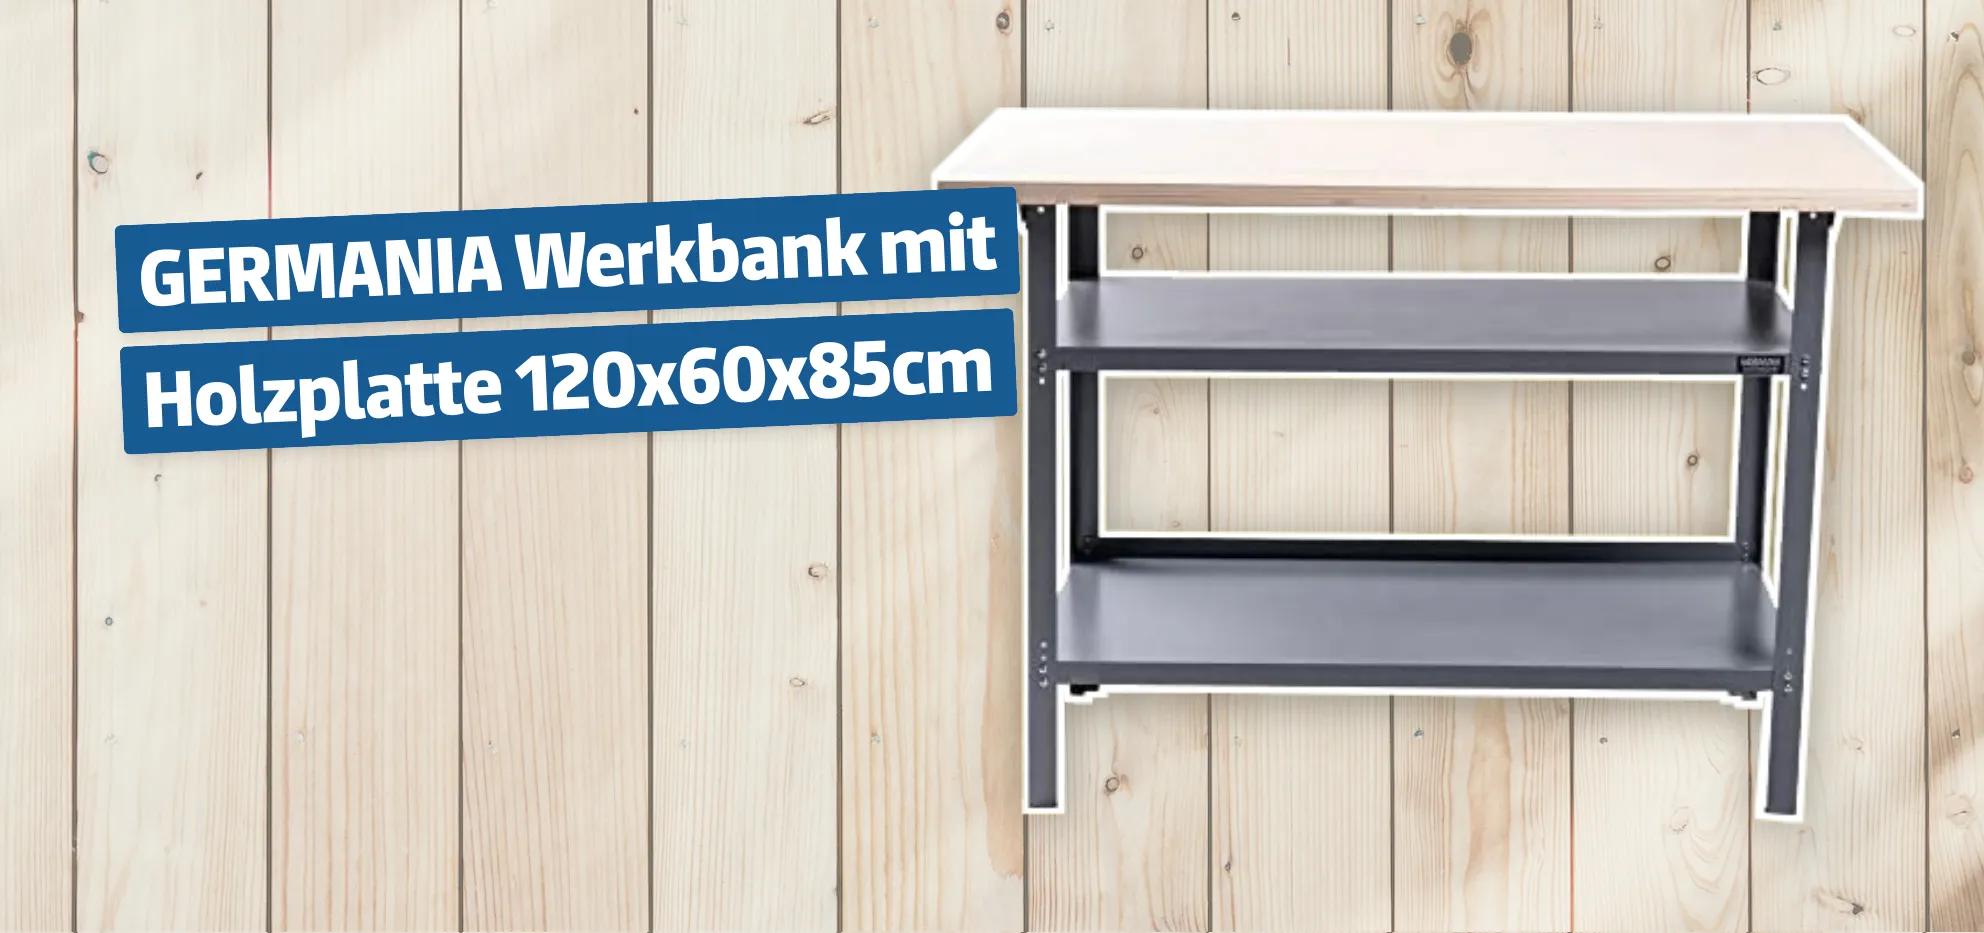 GERMANIA Werkbank mit Holzplatte 120x60x85cm